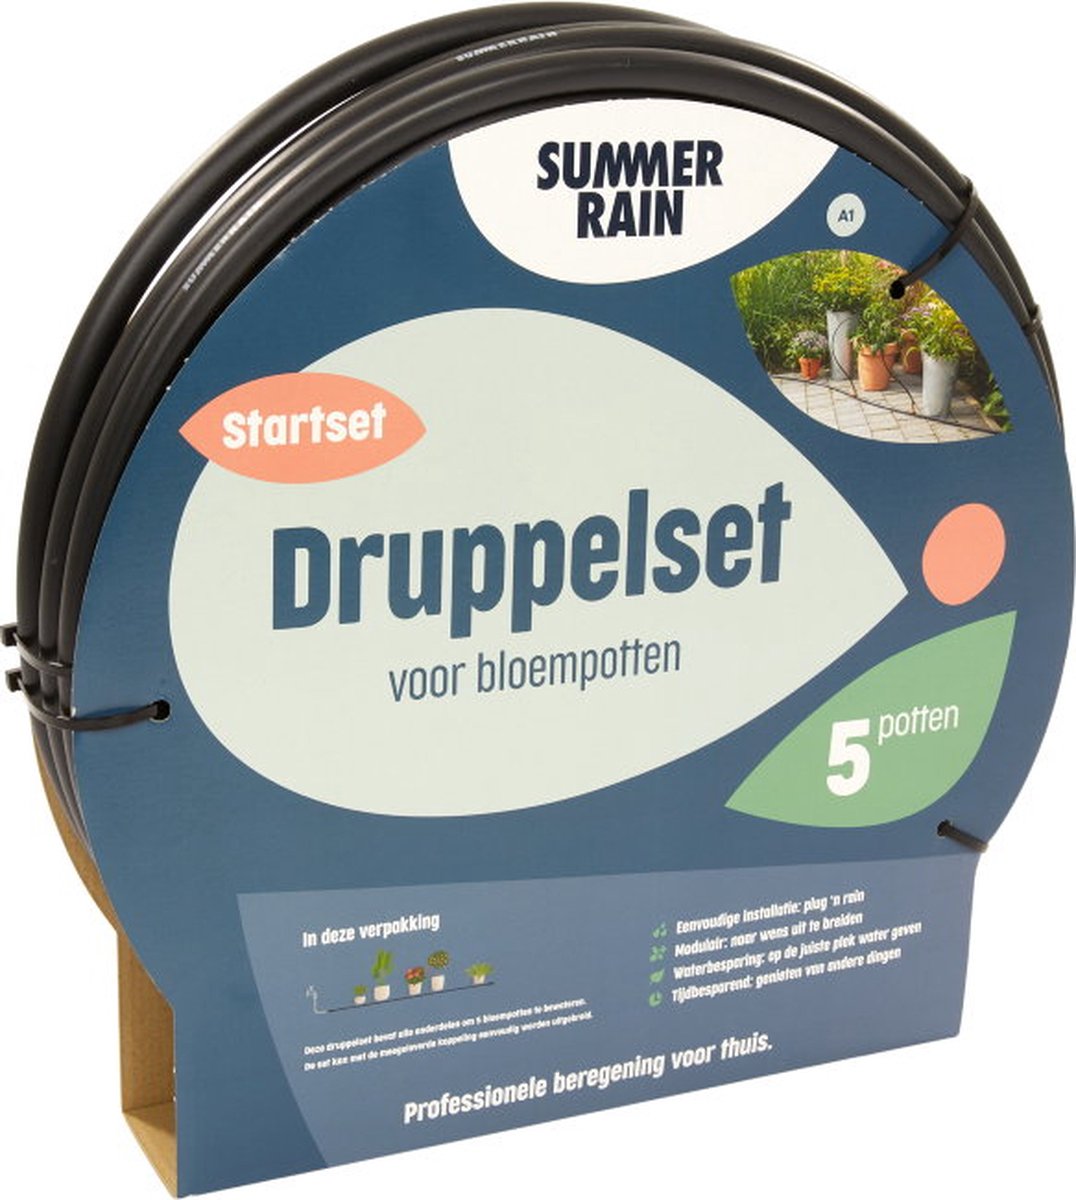 SummerRain druppelsysteem - druppelset voor balkon en terras - geschikt voor 5 bloempotten - professionele beregening voor thuis